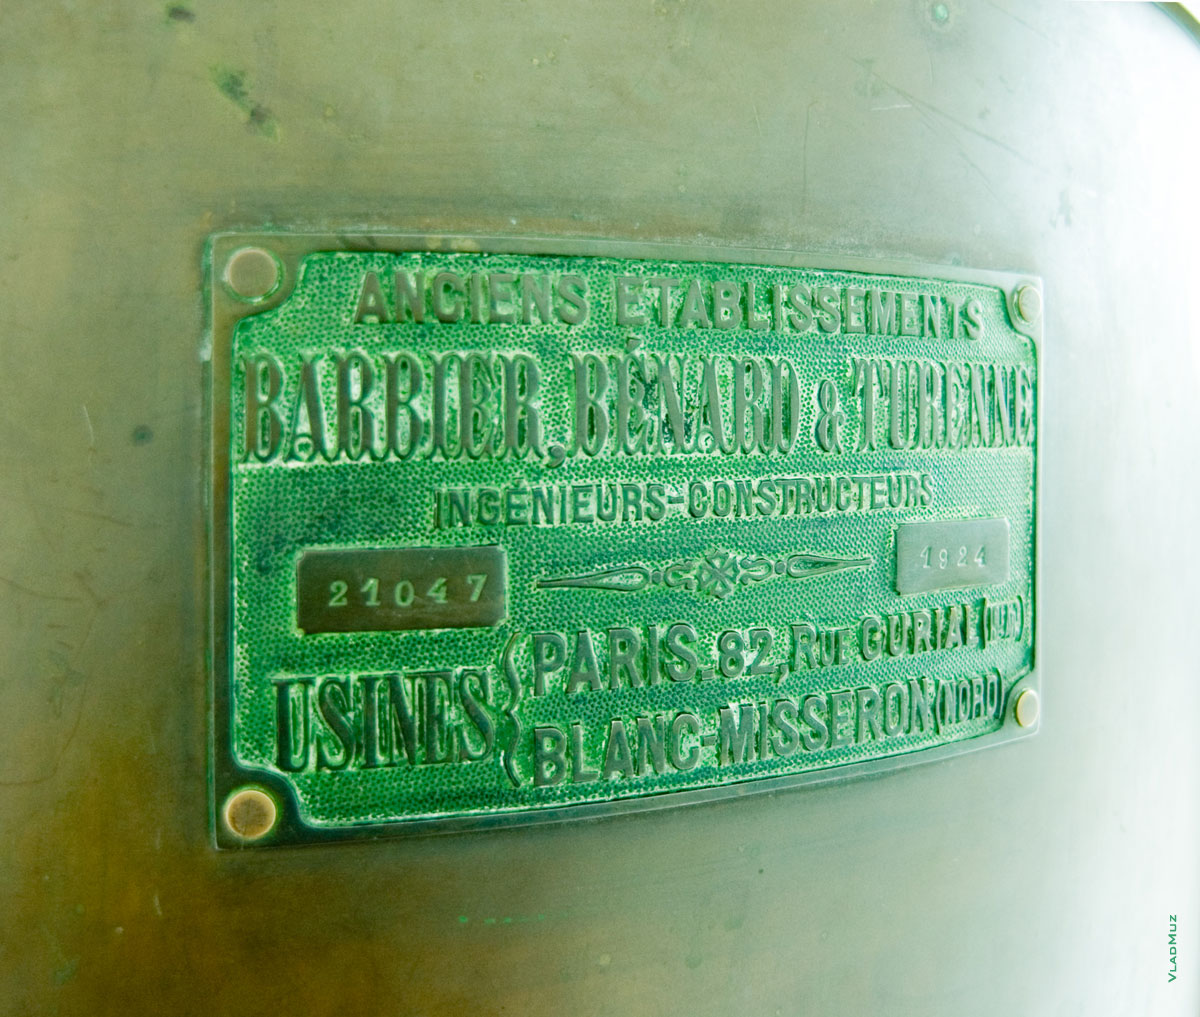 Металлический шильдик на маяке с наименованием изготовителя, серийным номером и датой изготовления